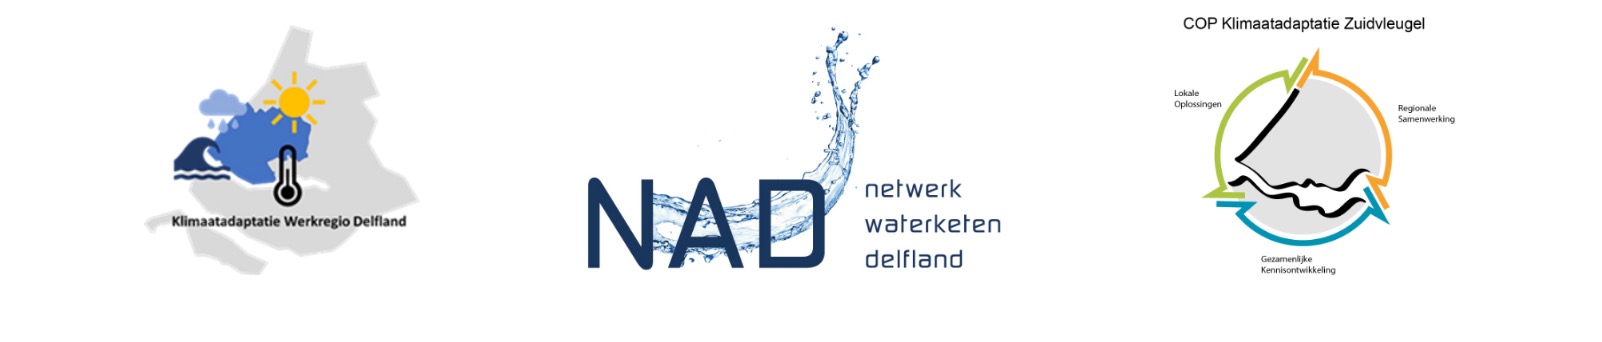 Afbeelding met de drie logo's van de waternetwerken in Regio Delfland. Het zijn klimaatadaptatie werkregio delfland, netwerk waterketen delfland en COP klimaatadaptatie Zuidvleugel